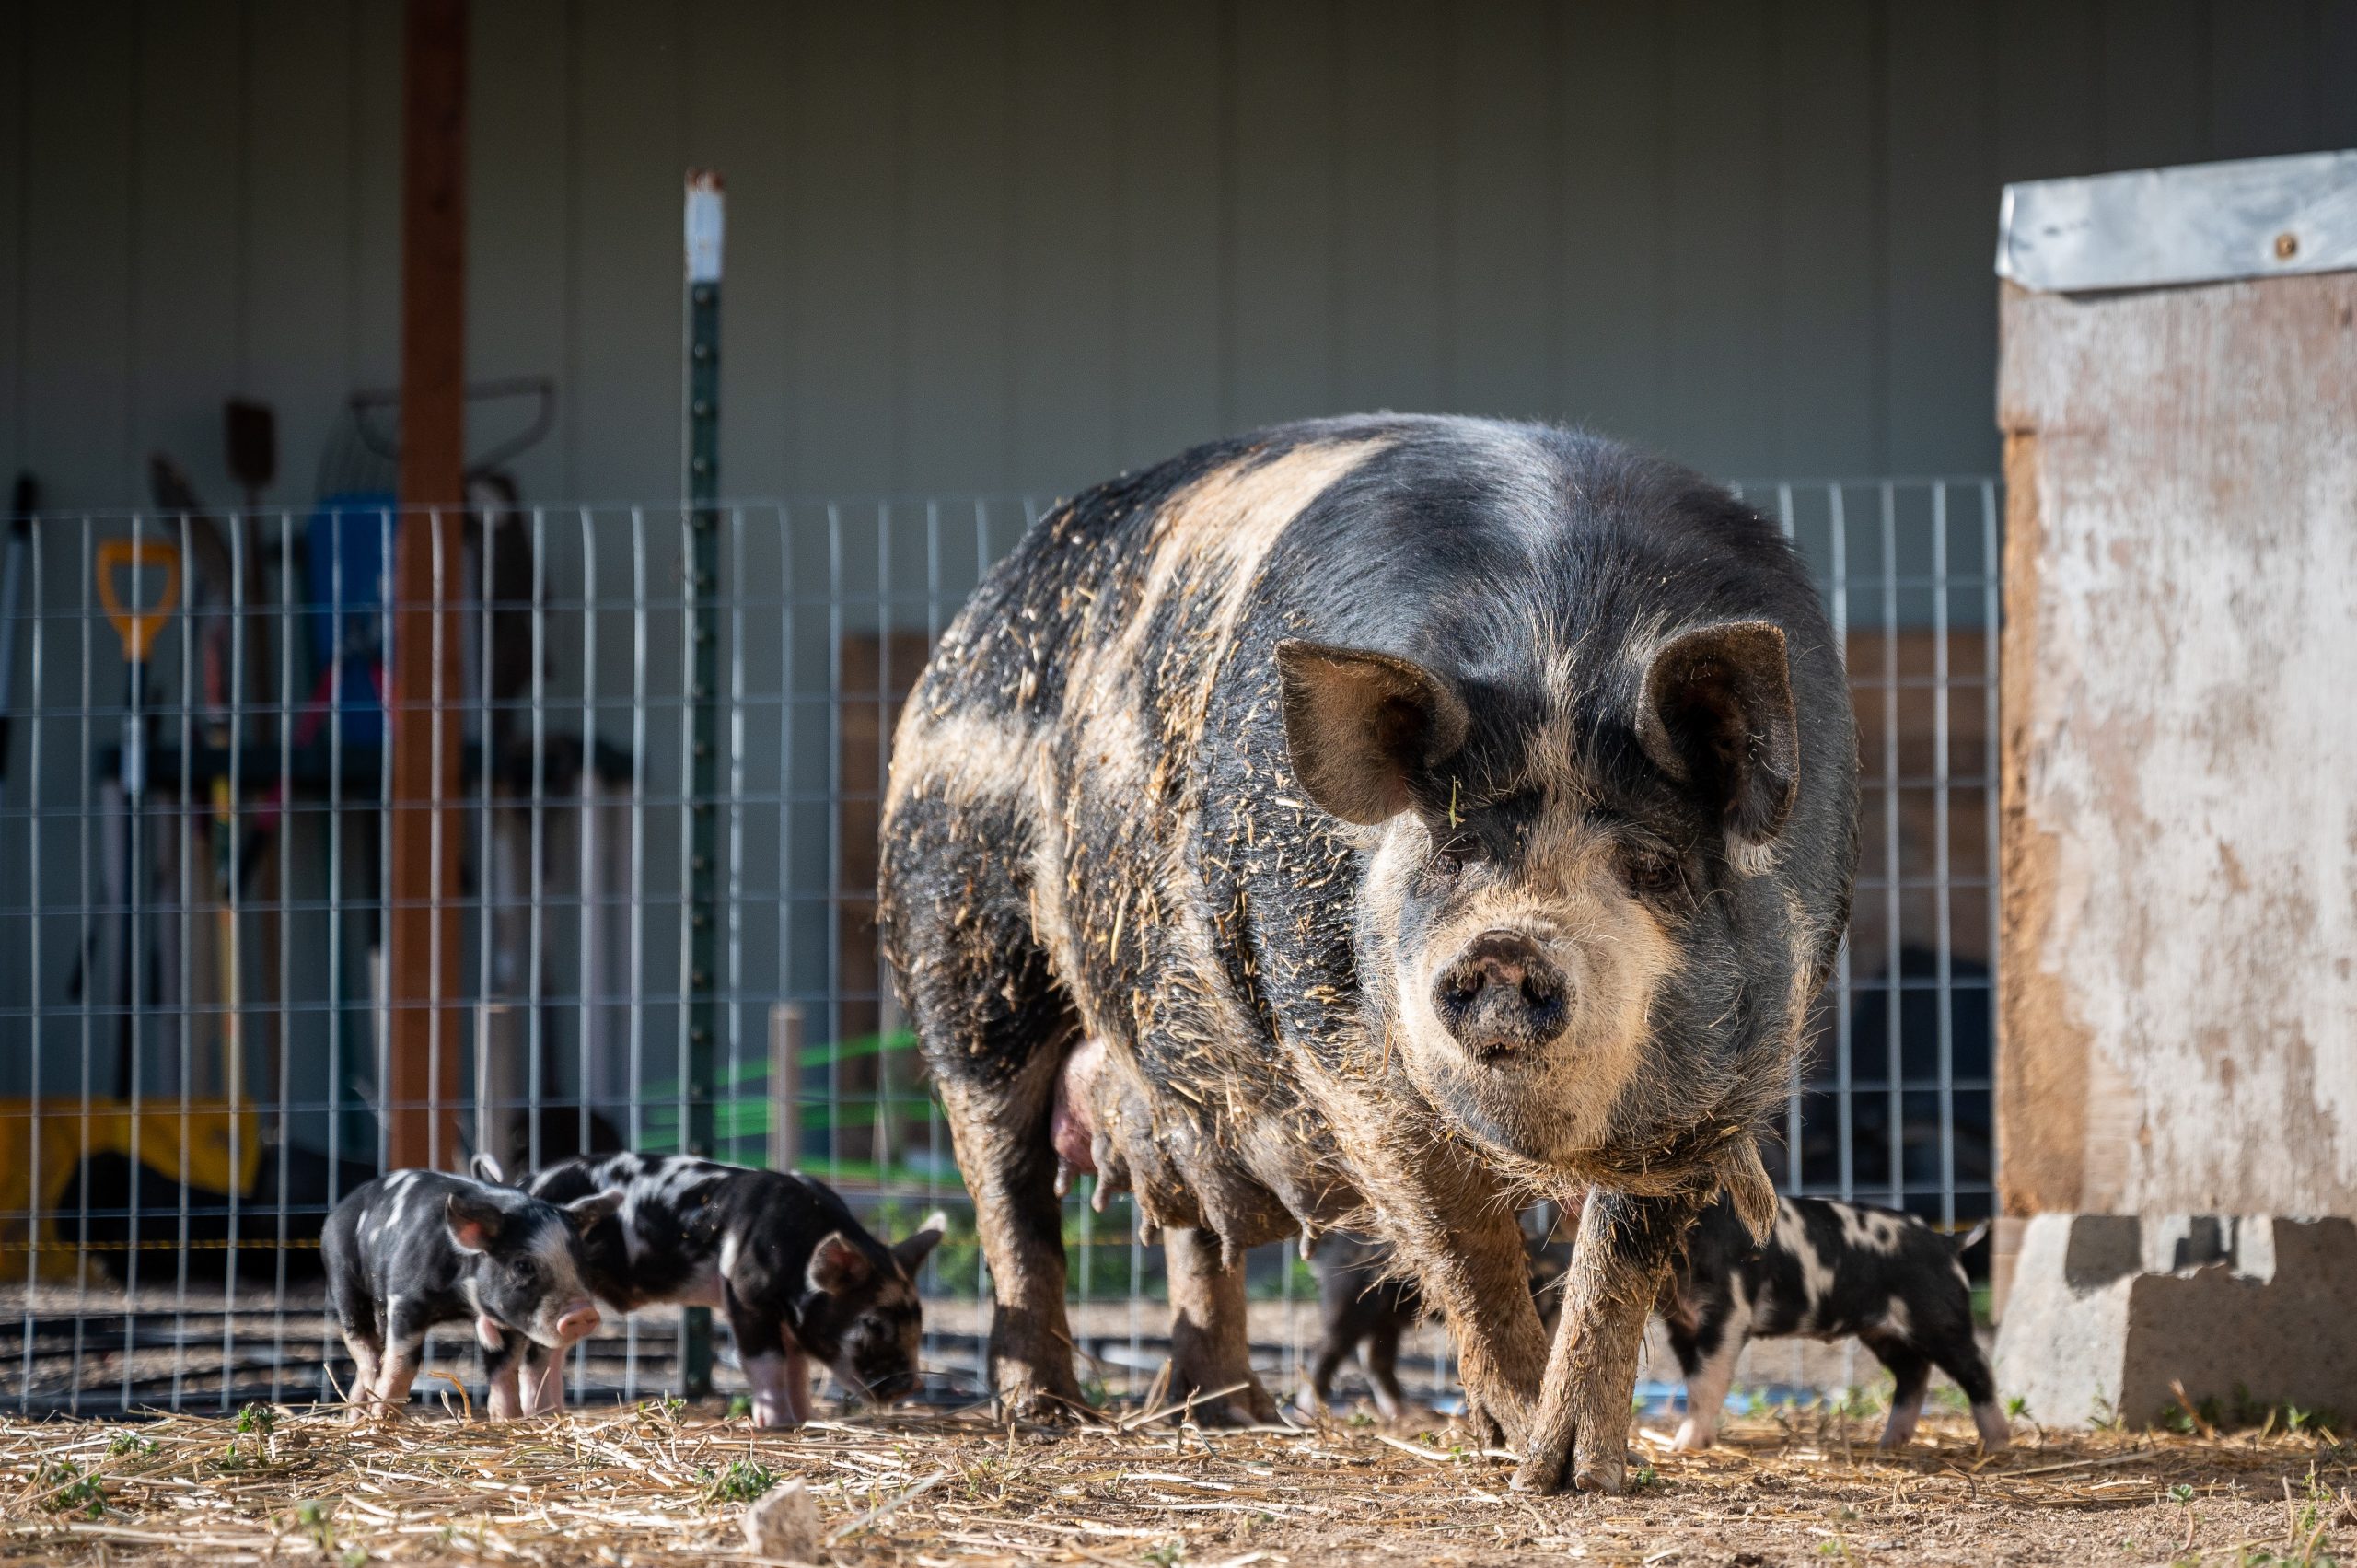 L'IA permet d'améliorer la productivité en agroalimentaire, incluant dans l'industrie porcine.
Crédit Photo: Pexels/Brett Sayles